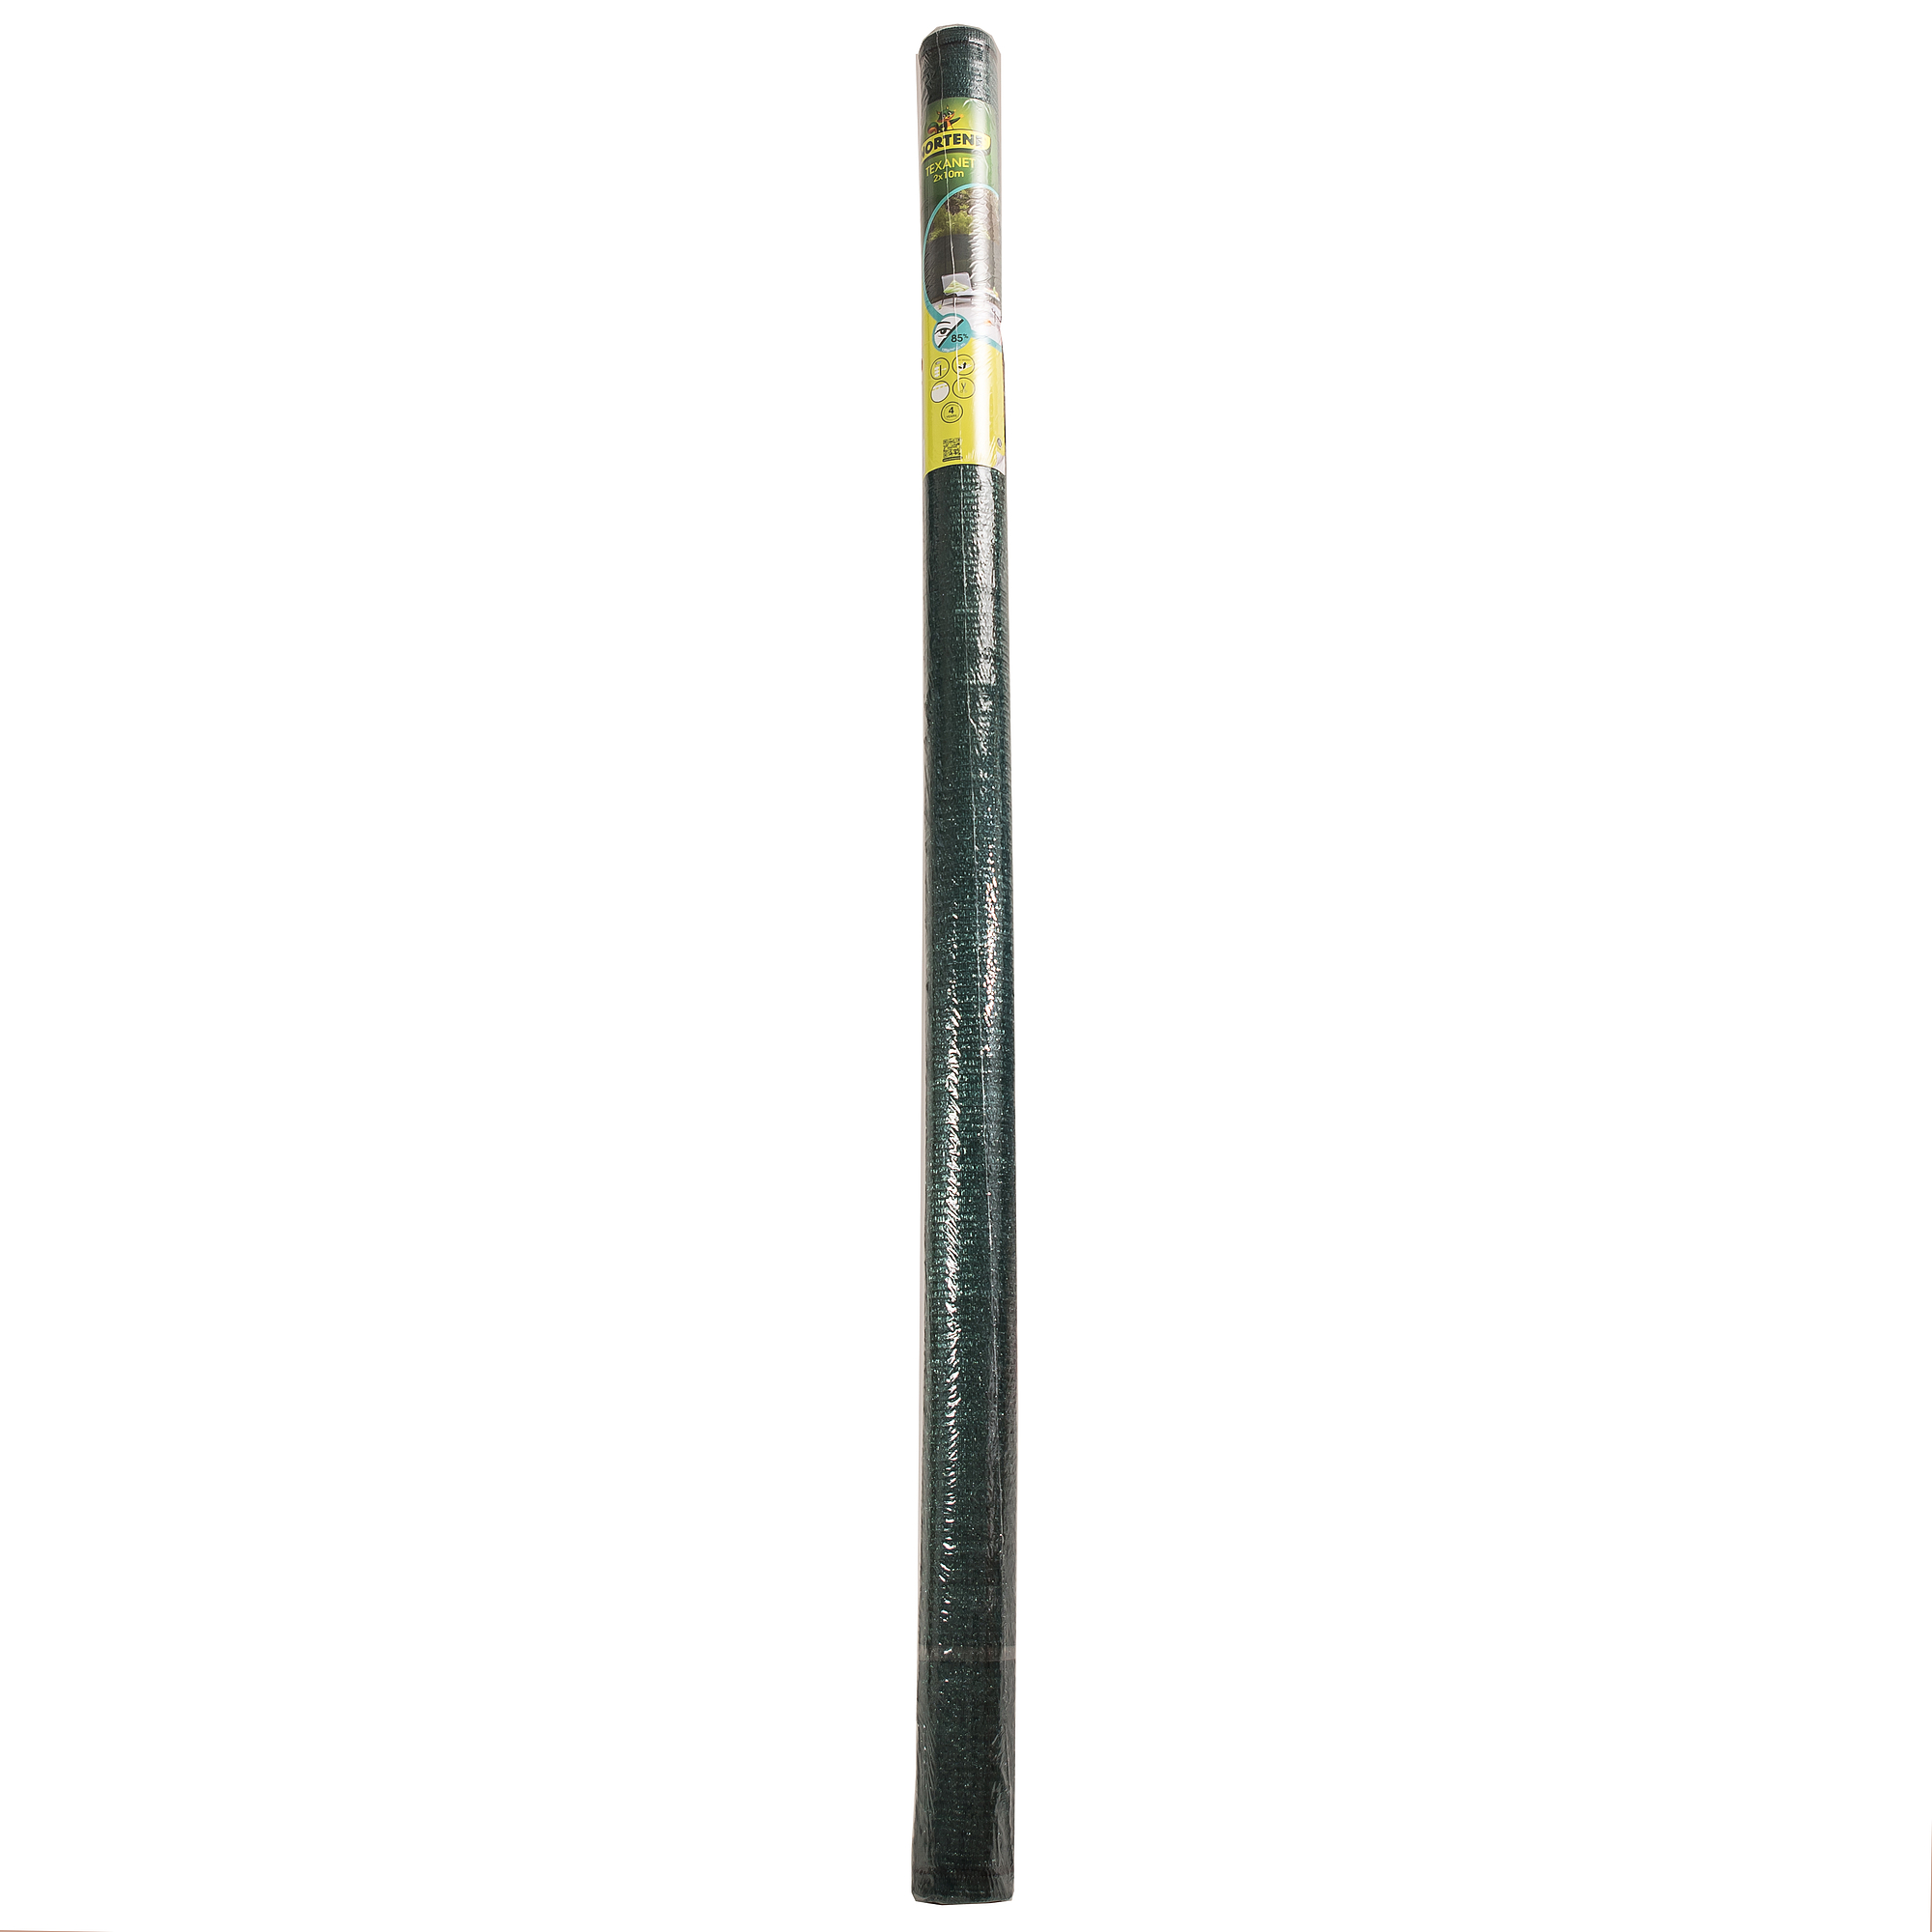 Nortene TEXANET szőtt árnyékoló háló gomblyukakkal 85% - 2 x 10 m -  zöld - 174058